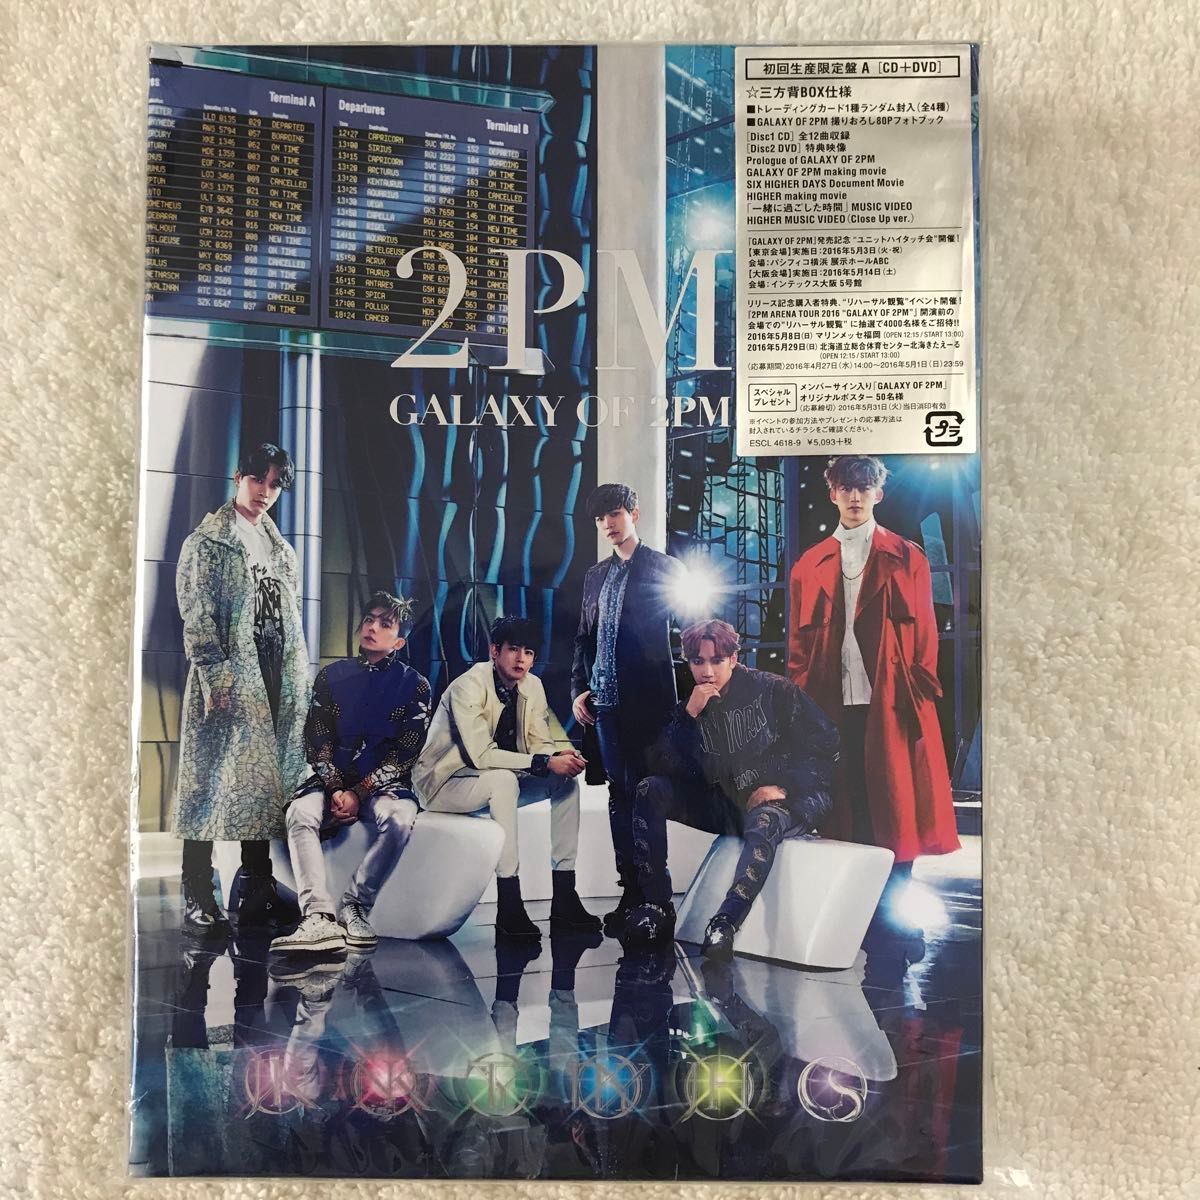 ☆韓国 2PM   GALAXY OF 2PM 初回生産限定盤(A)         (CD＋DVD＋フォトブック)